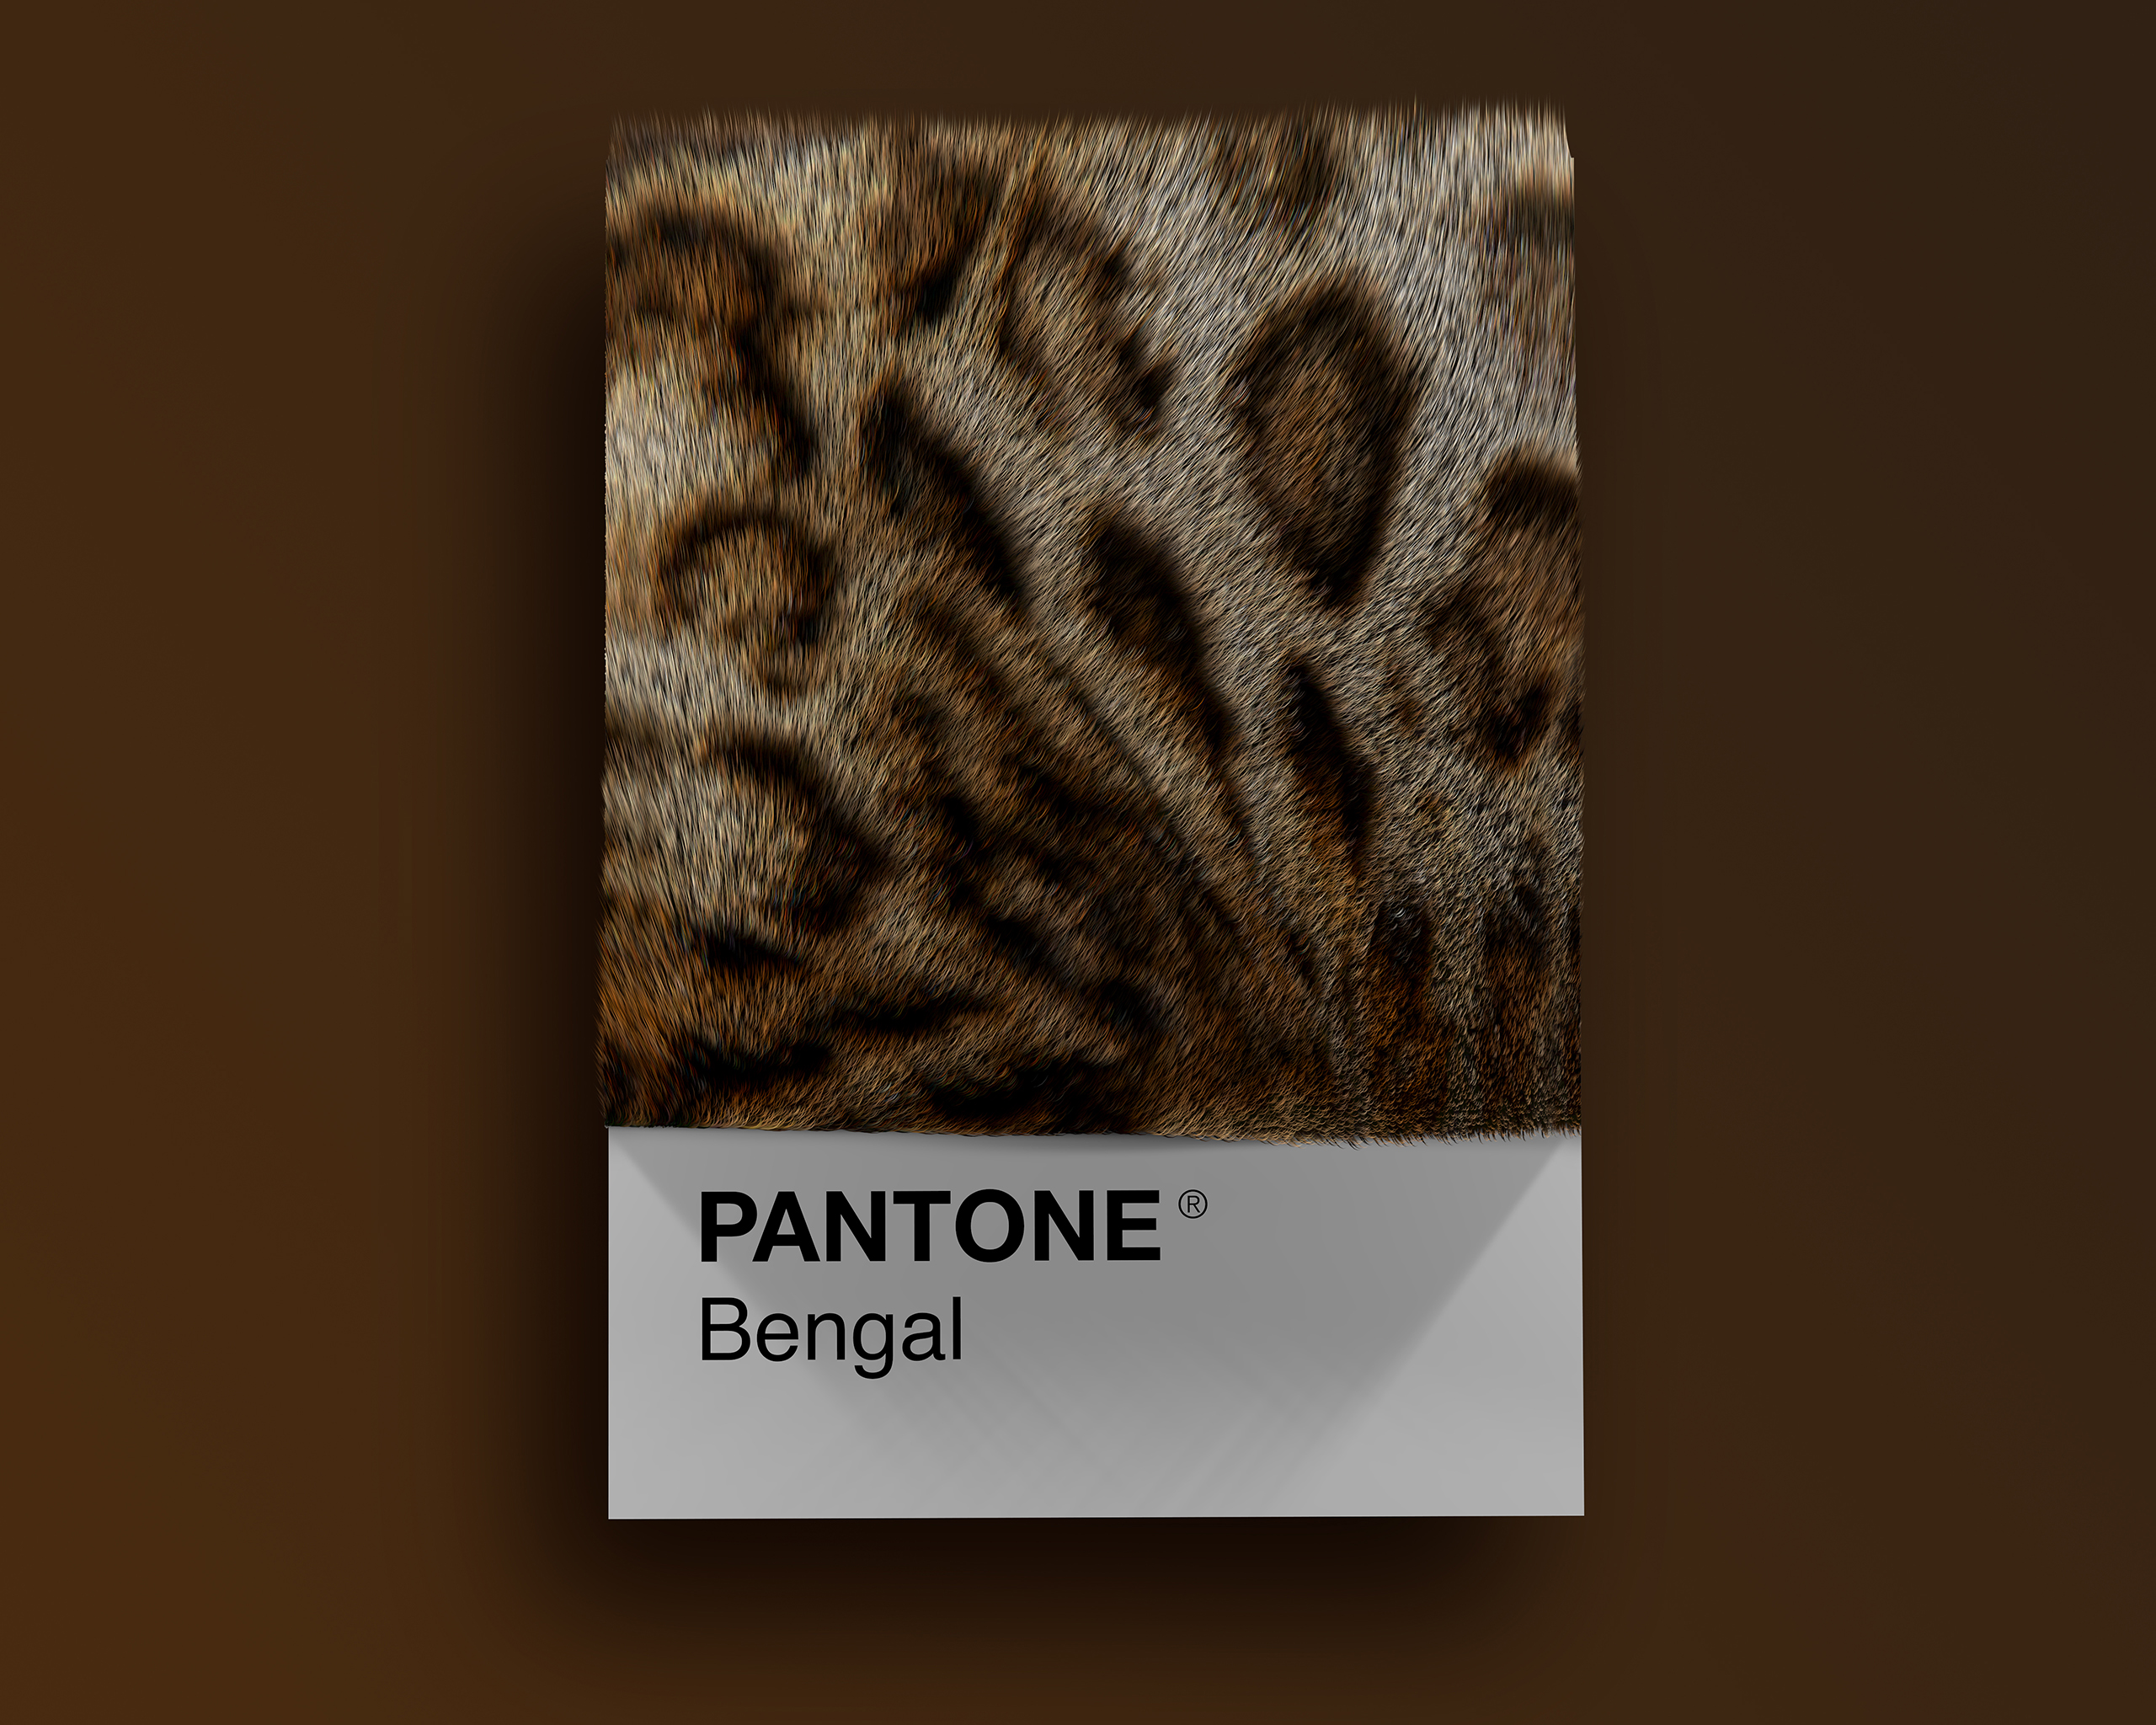 Bengal as Pantone